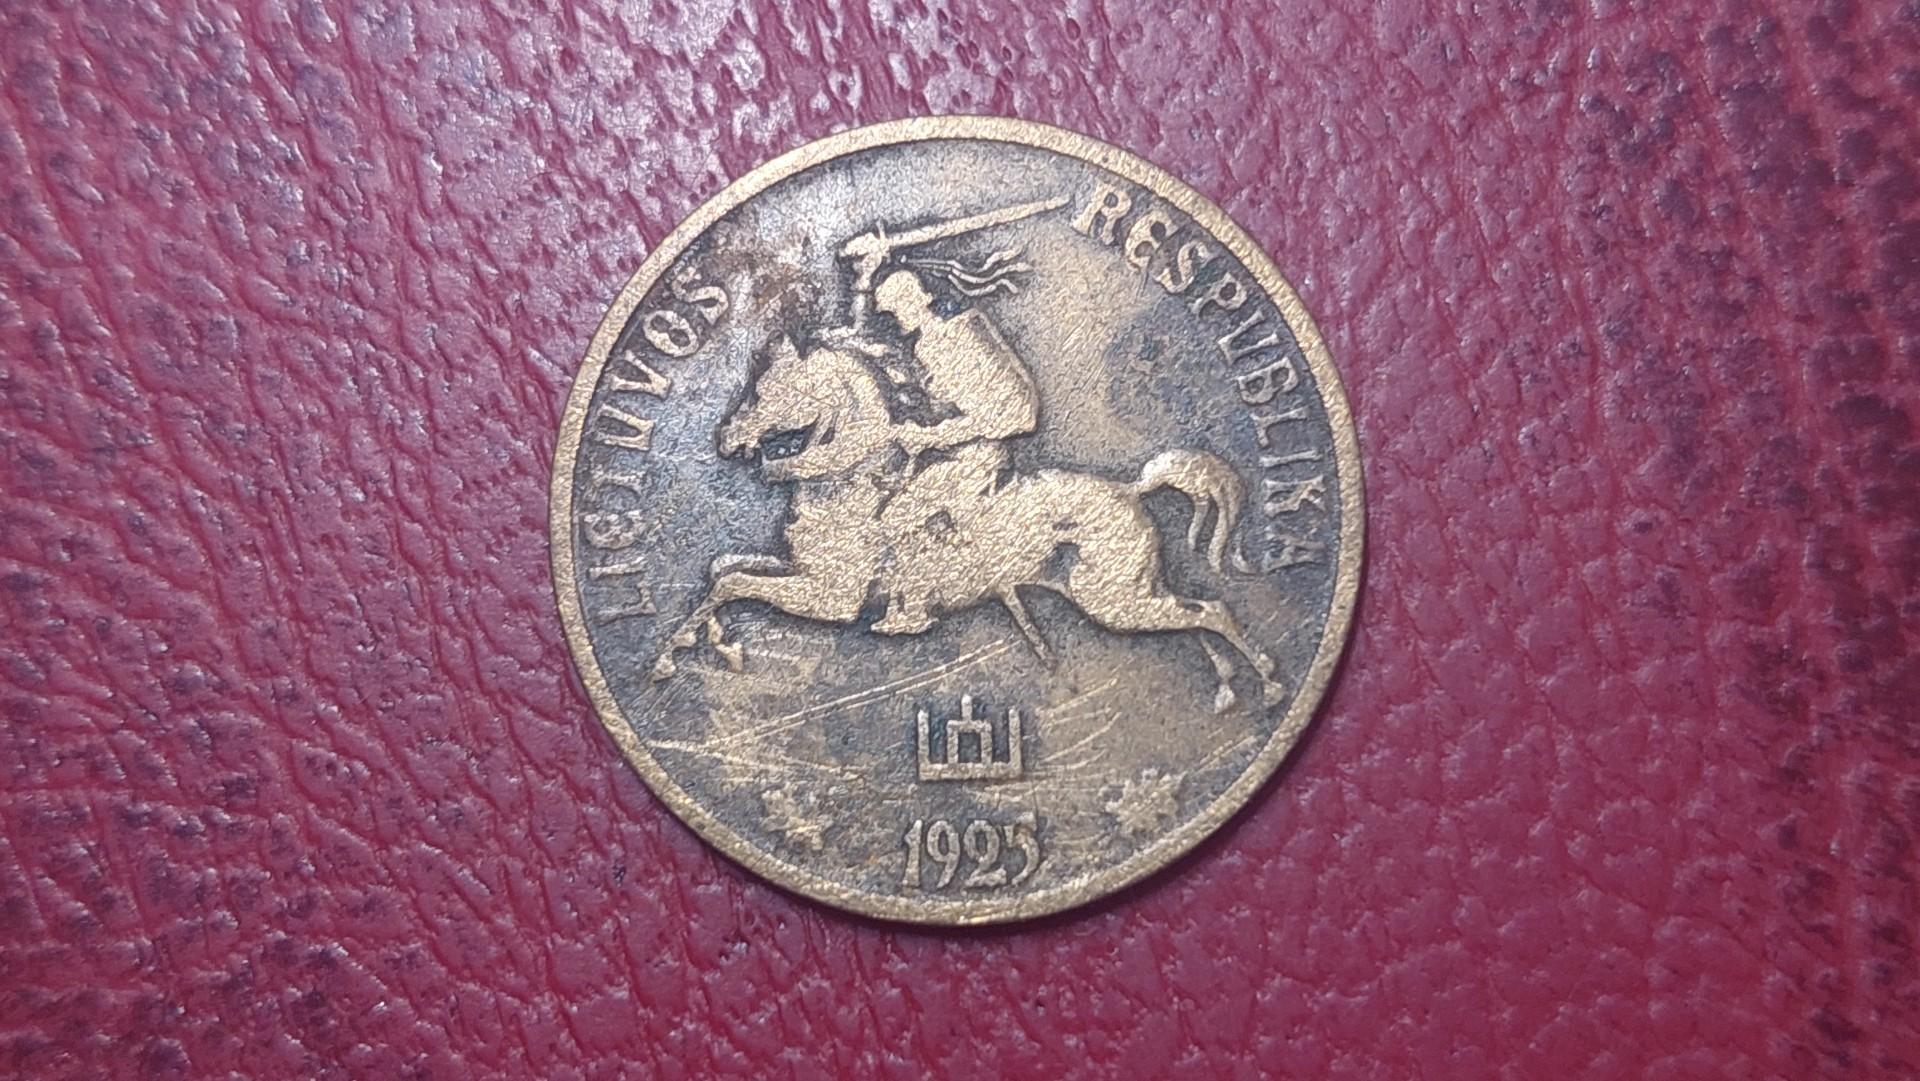 Lietuva 10 centų, 1925 KM# 73